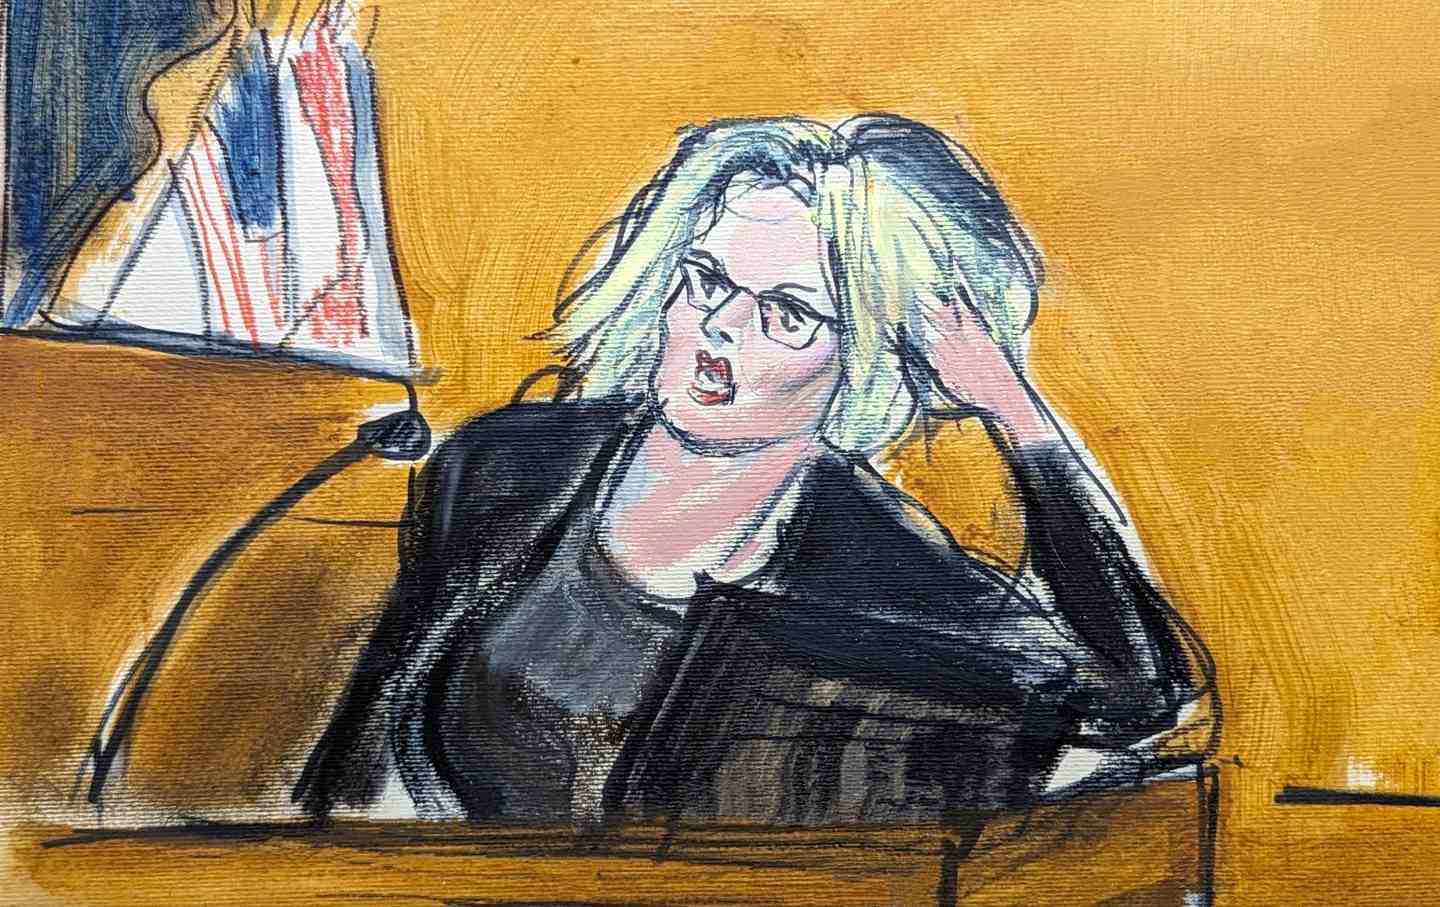 Eine Gerichtsskizze von Stormy Daniels im Zeugenstand, auf ihren linken Arm gestützt, mit dem Richter im Hintergrund.